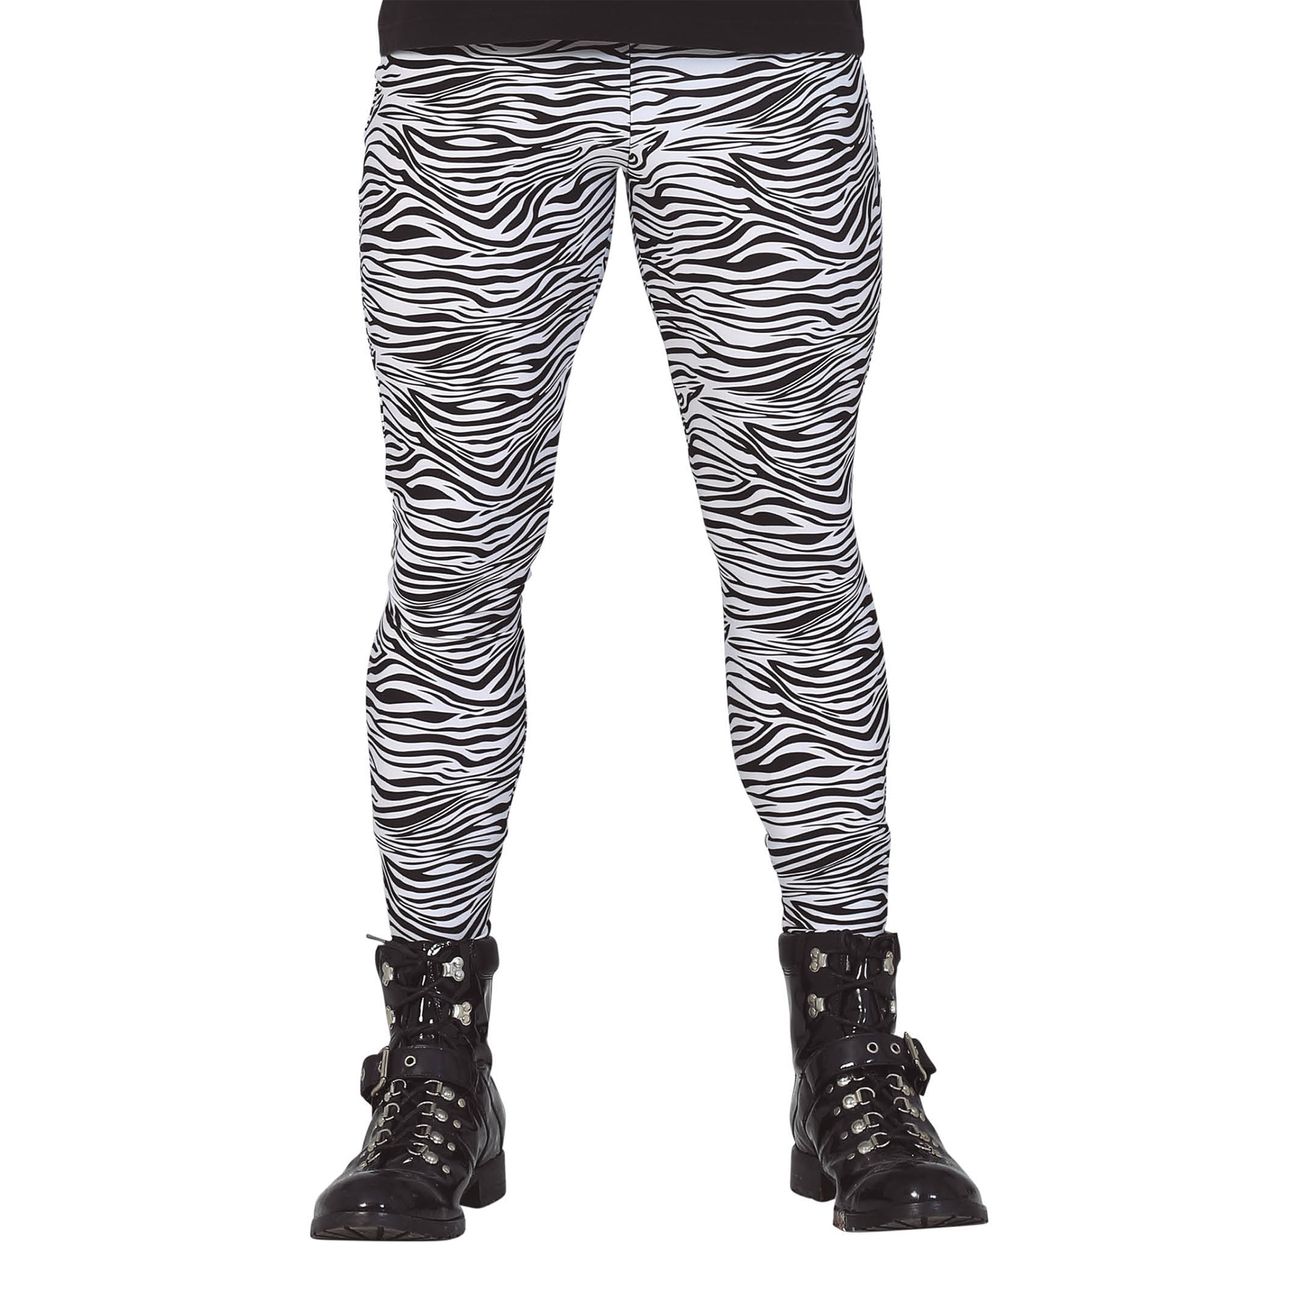 80-tals-zebramonstrade-leggings-herr-100489-1